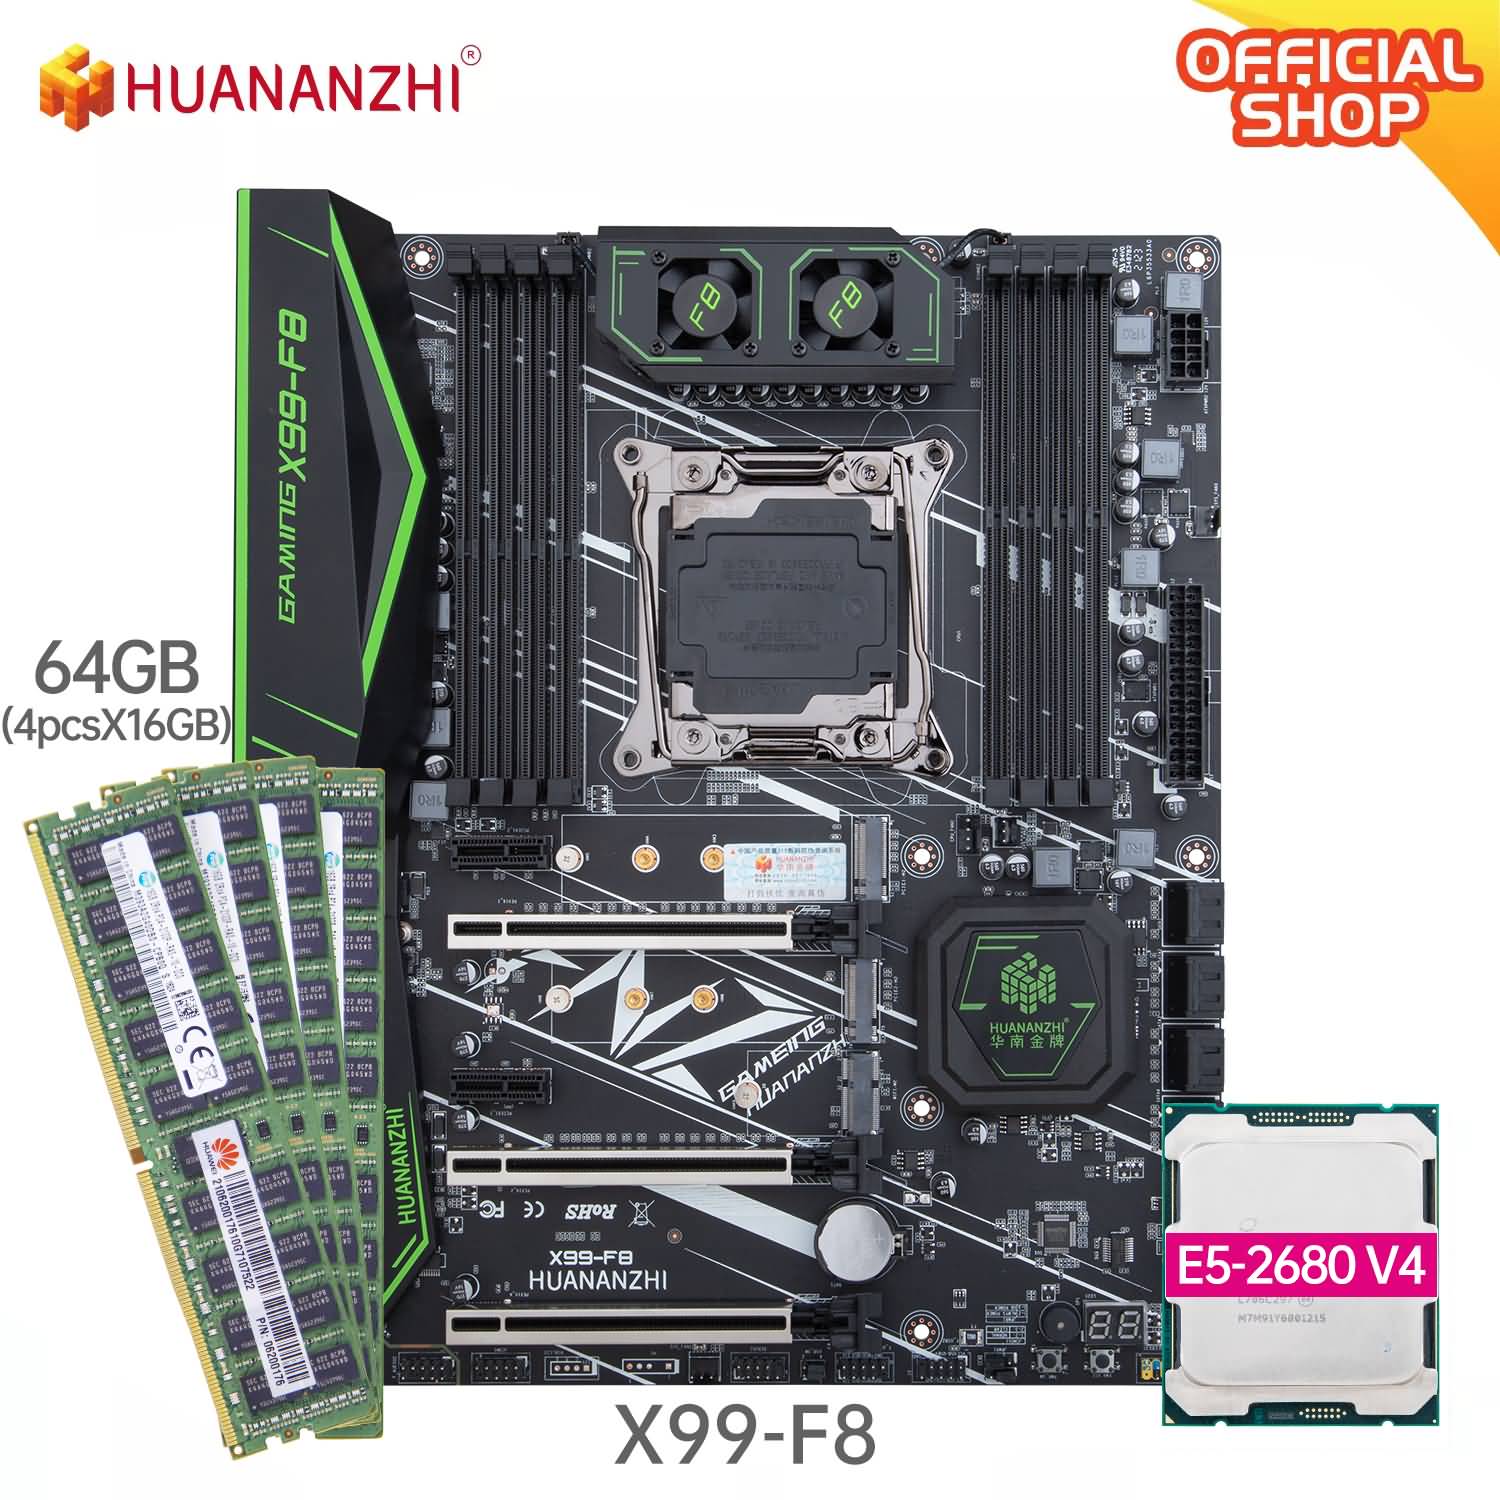 Buy Huananzhi X99 e5 2680v4 kit from online shop!